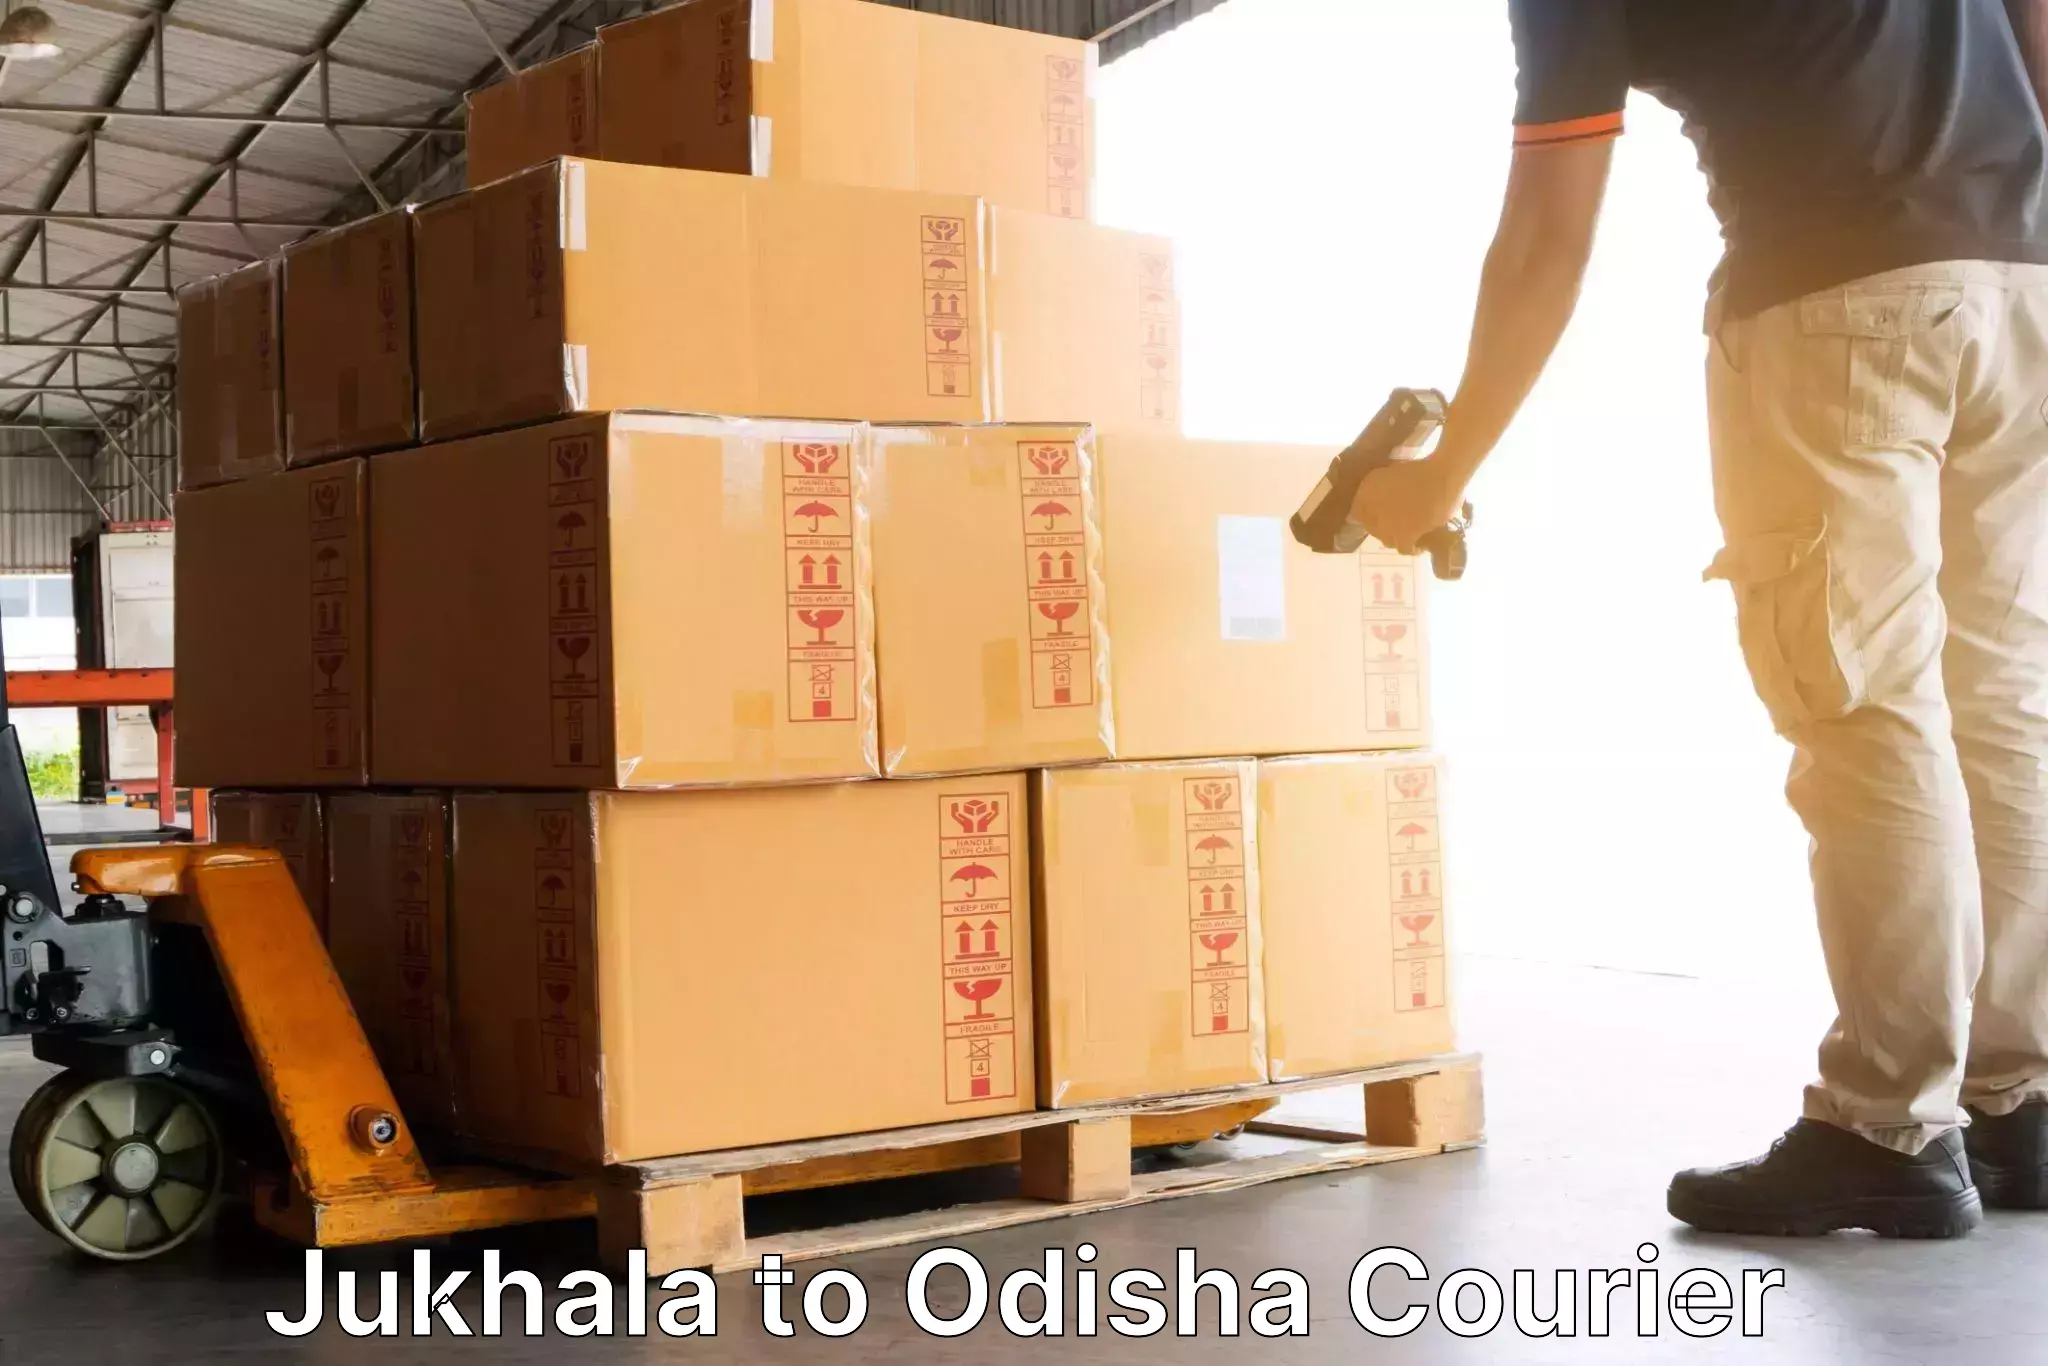 Professional courier handling Jukhala to Balipokhari